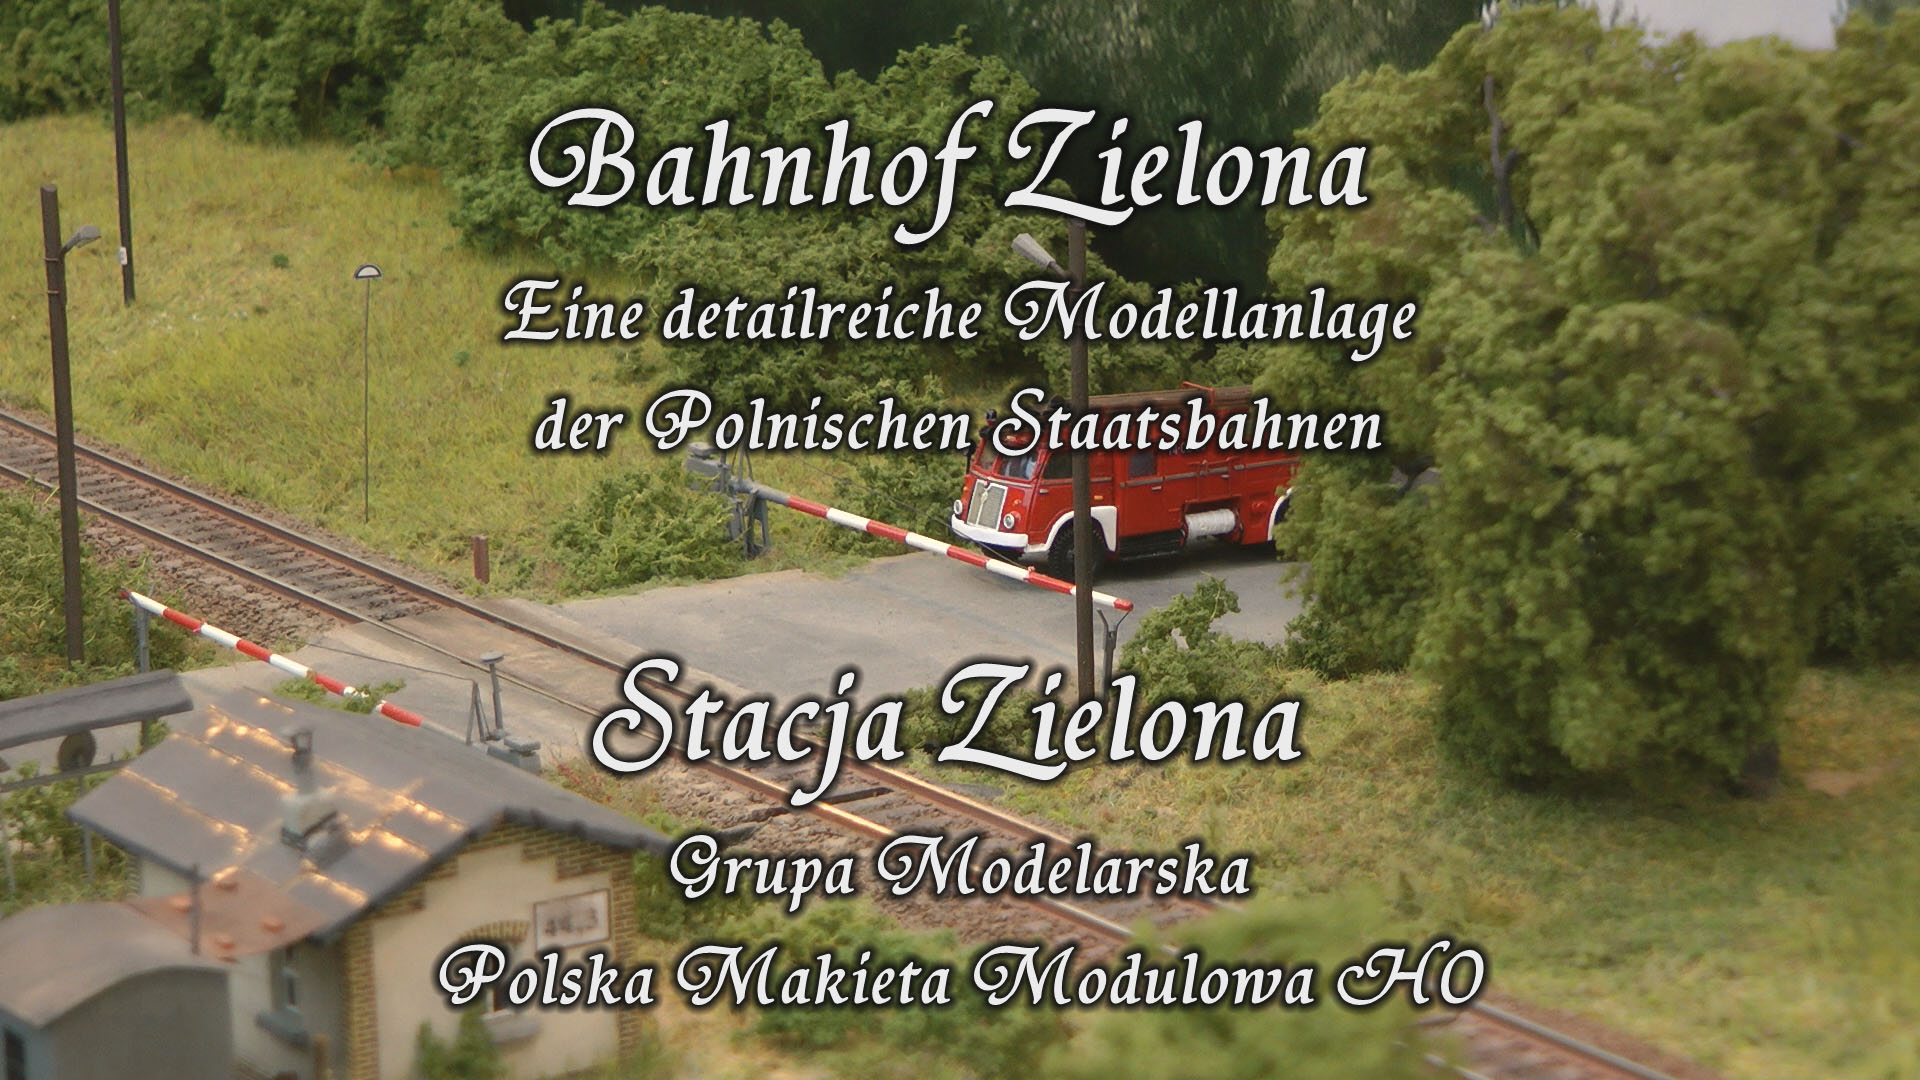 Modellbahn H0 Bahnhof Zielona mit Dampfloks und Schienenbus der Polnischen Staatsbahnen